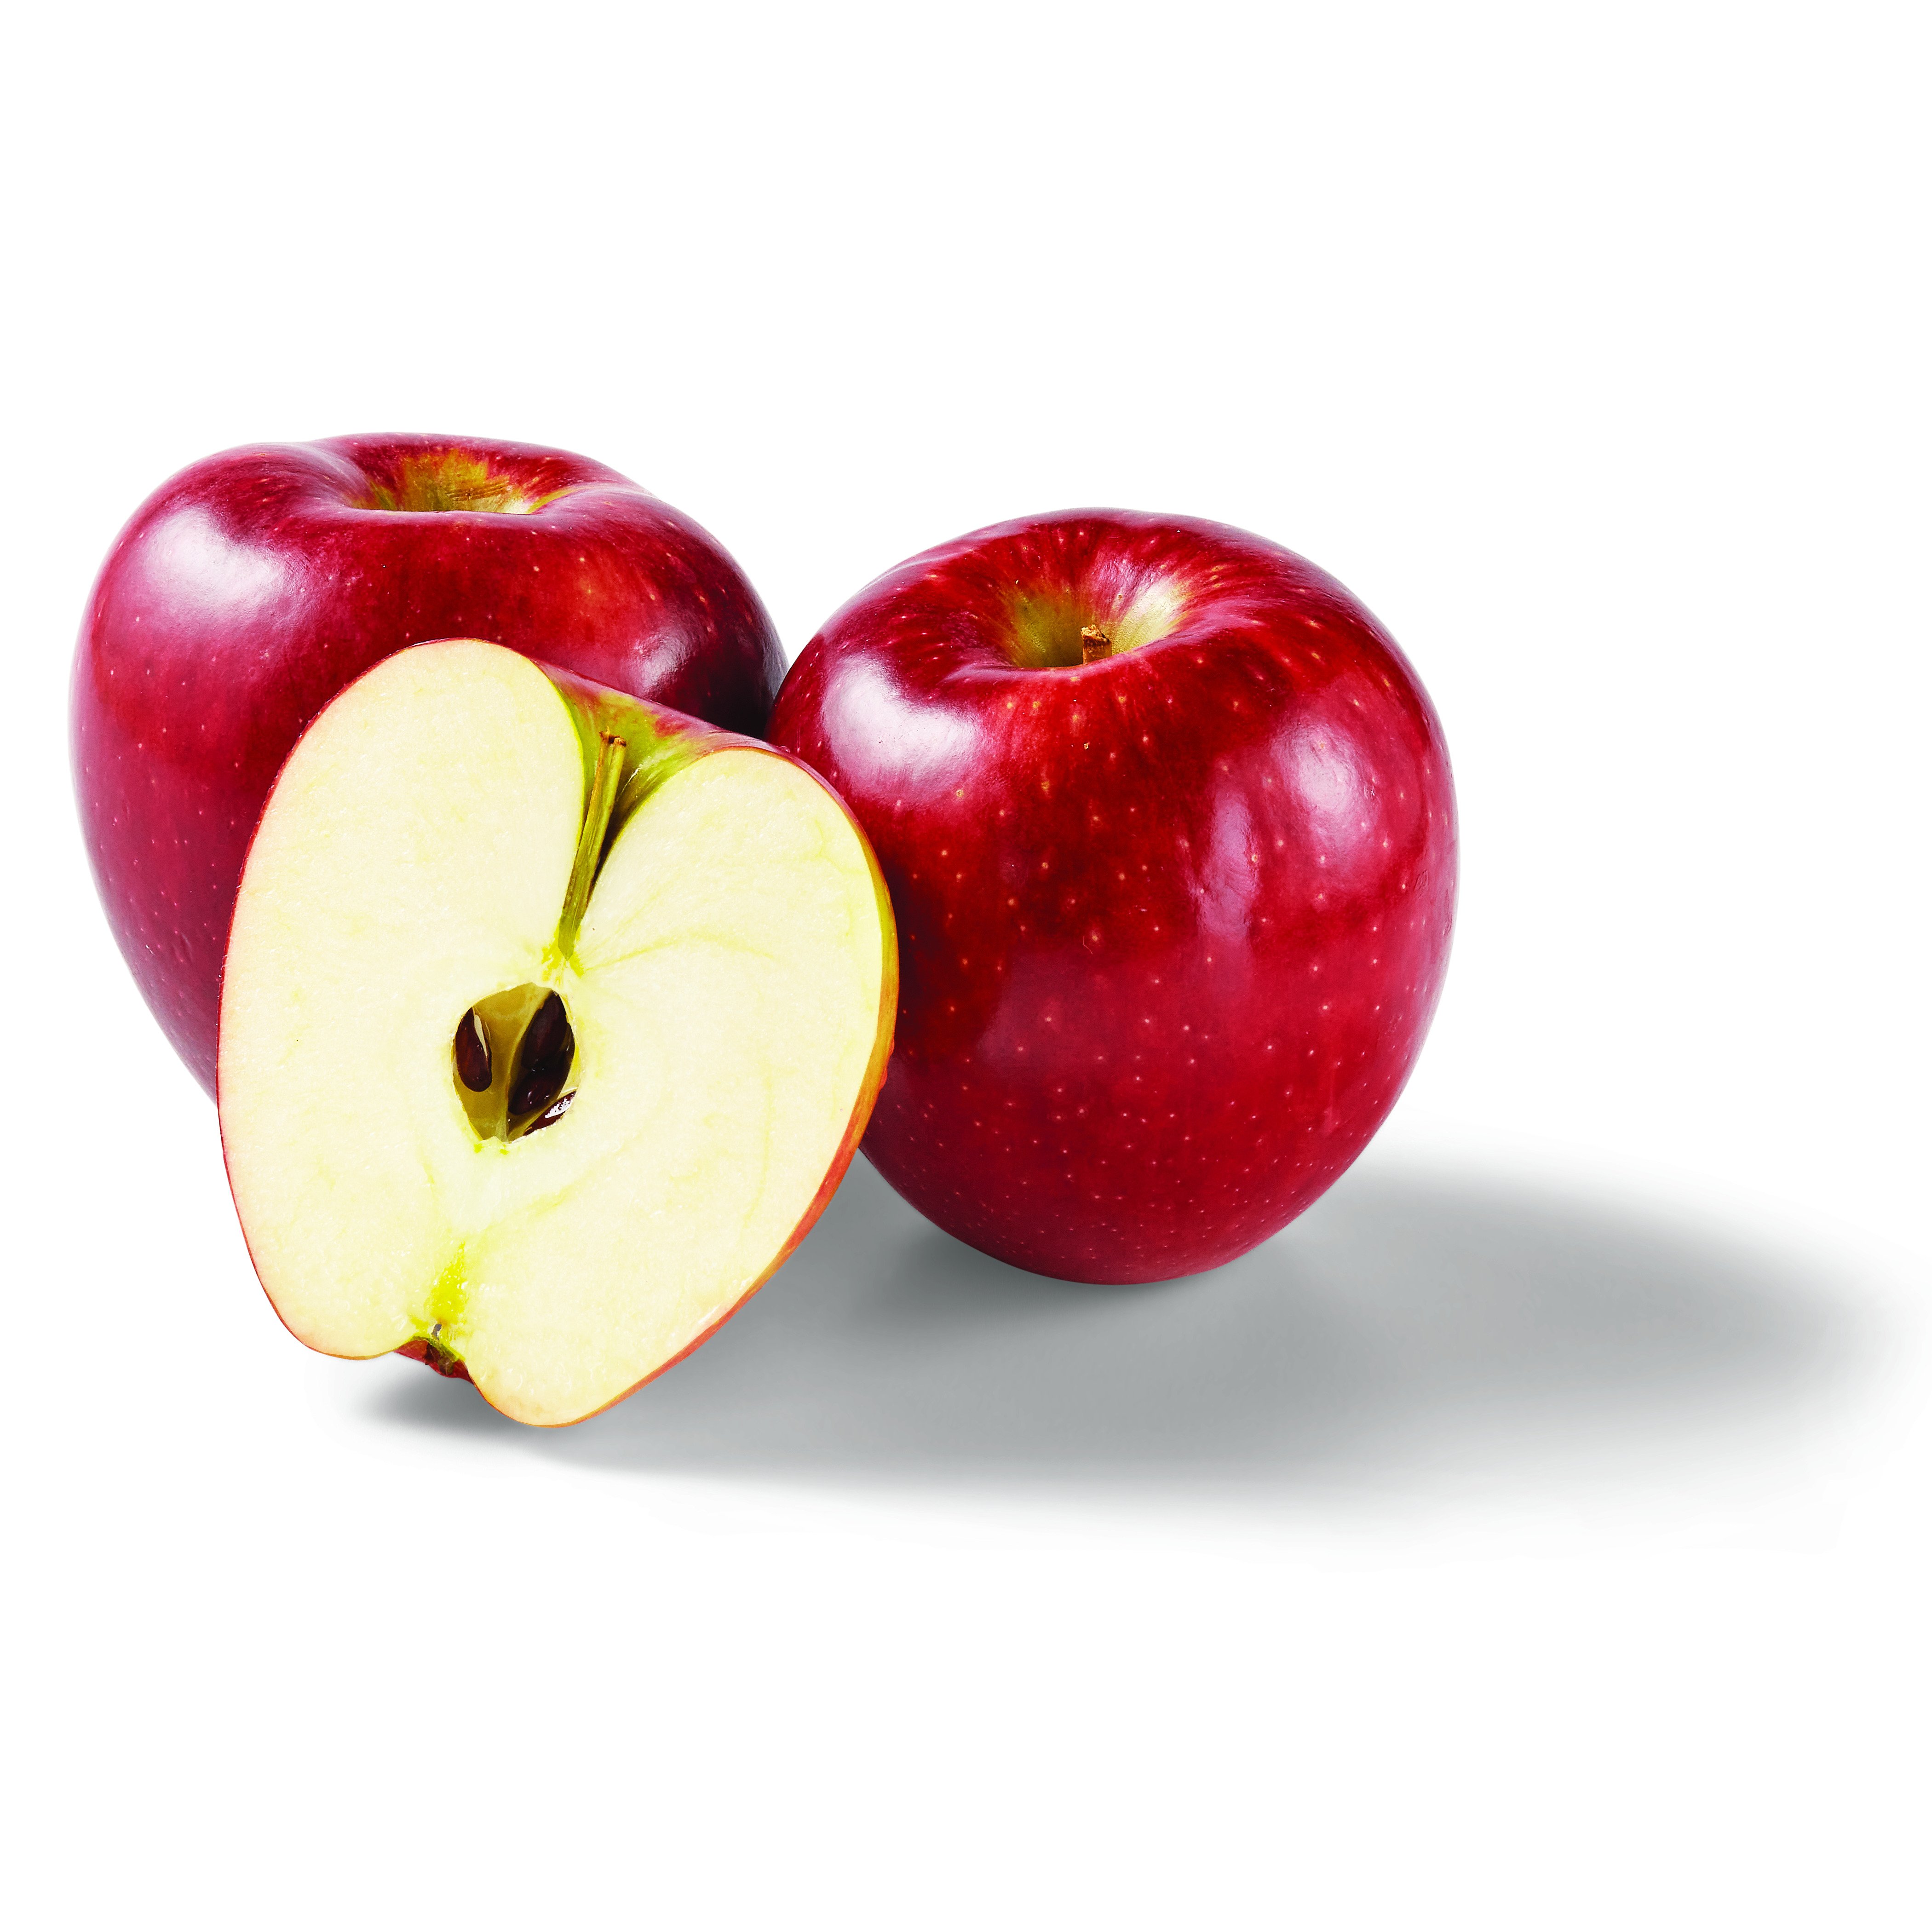 Where to Buy Apples Cosmic Crisp® Apples